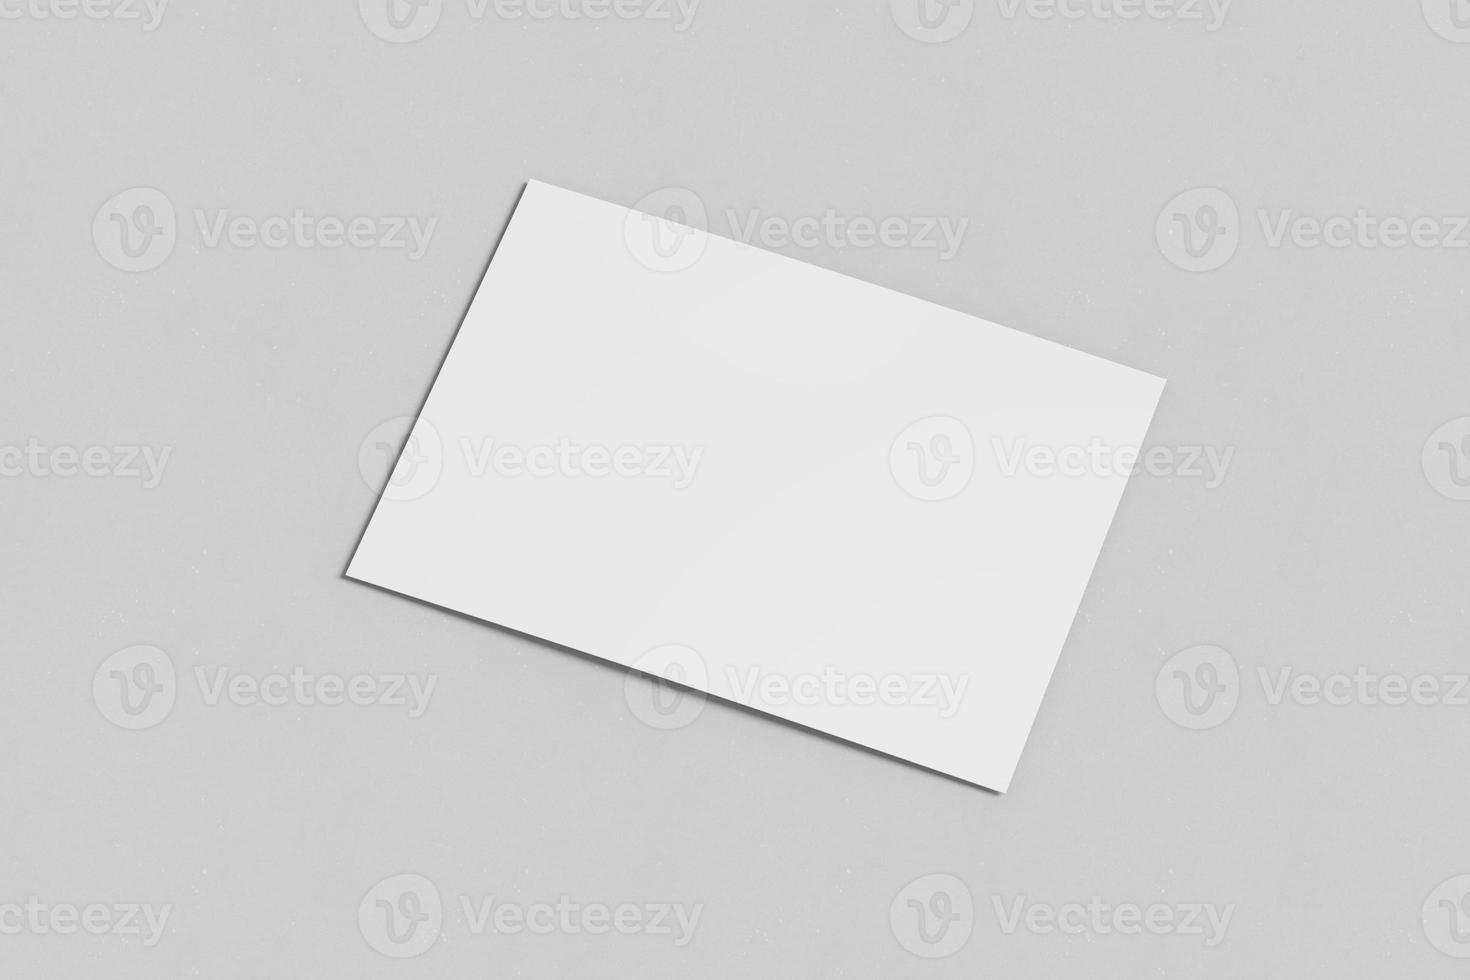 blanco flyer ansichtkaart mockup foto